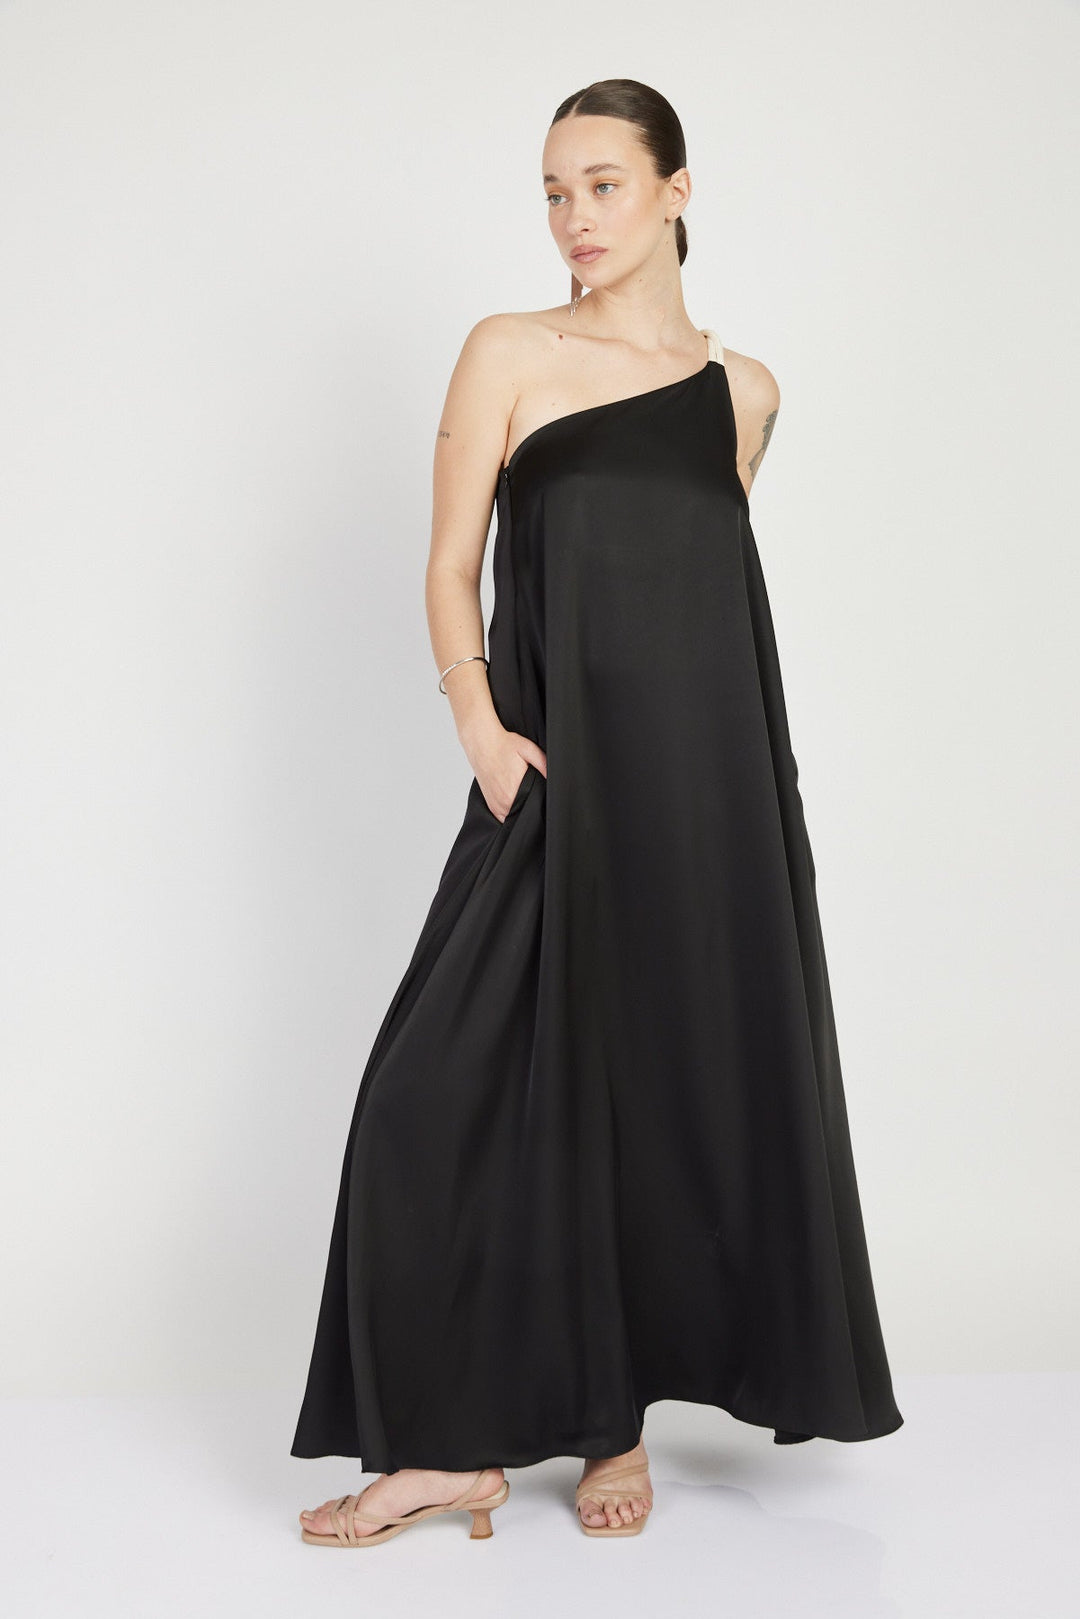 שמלת רודאו וואן שולדר בצבע שחור - Razili X Noritamy